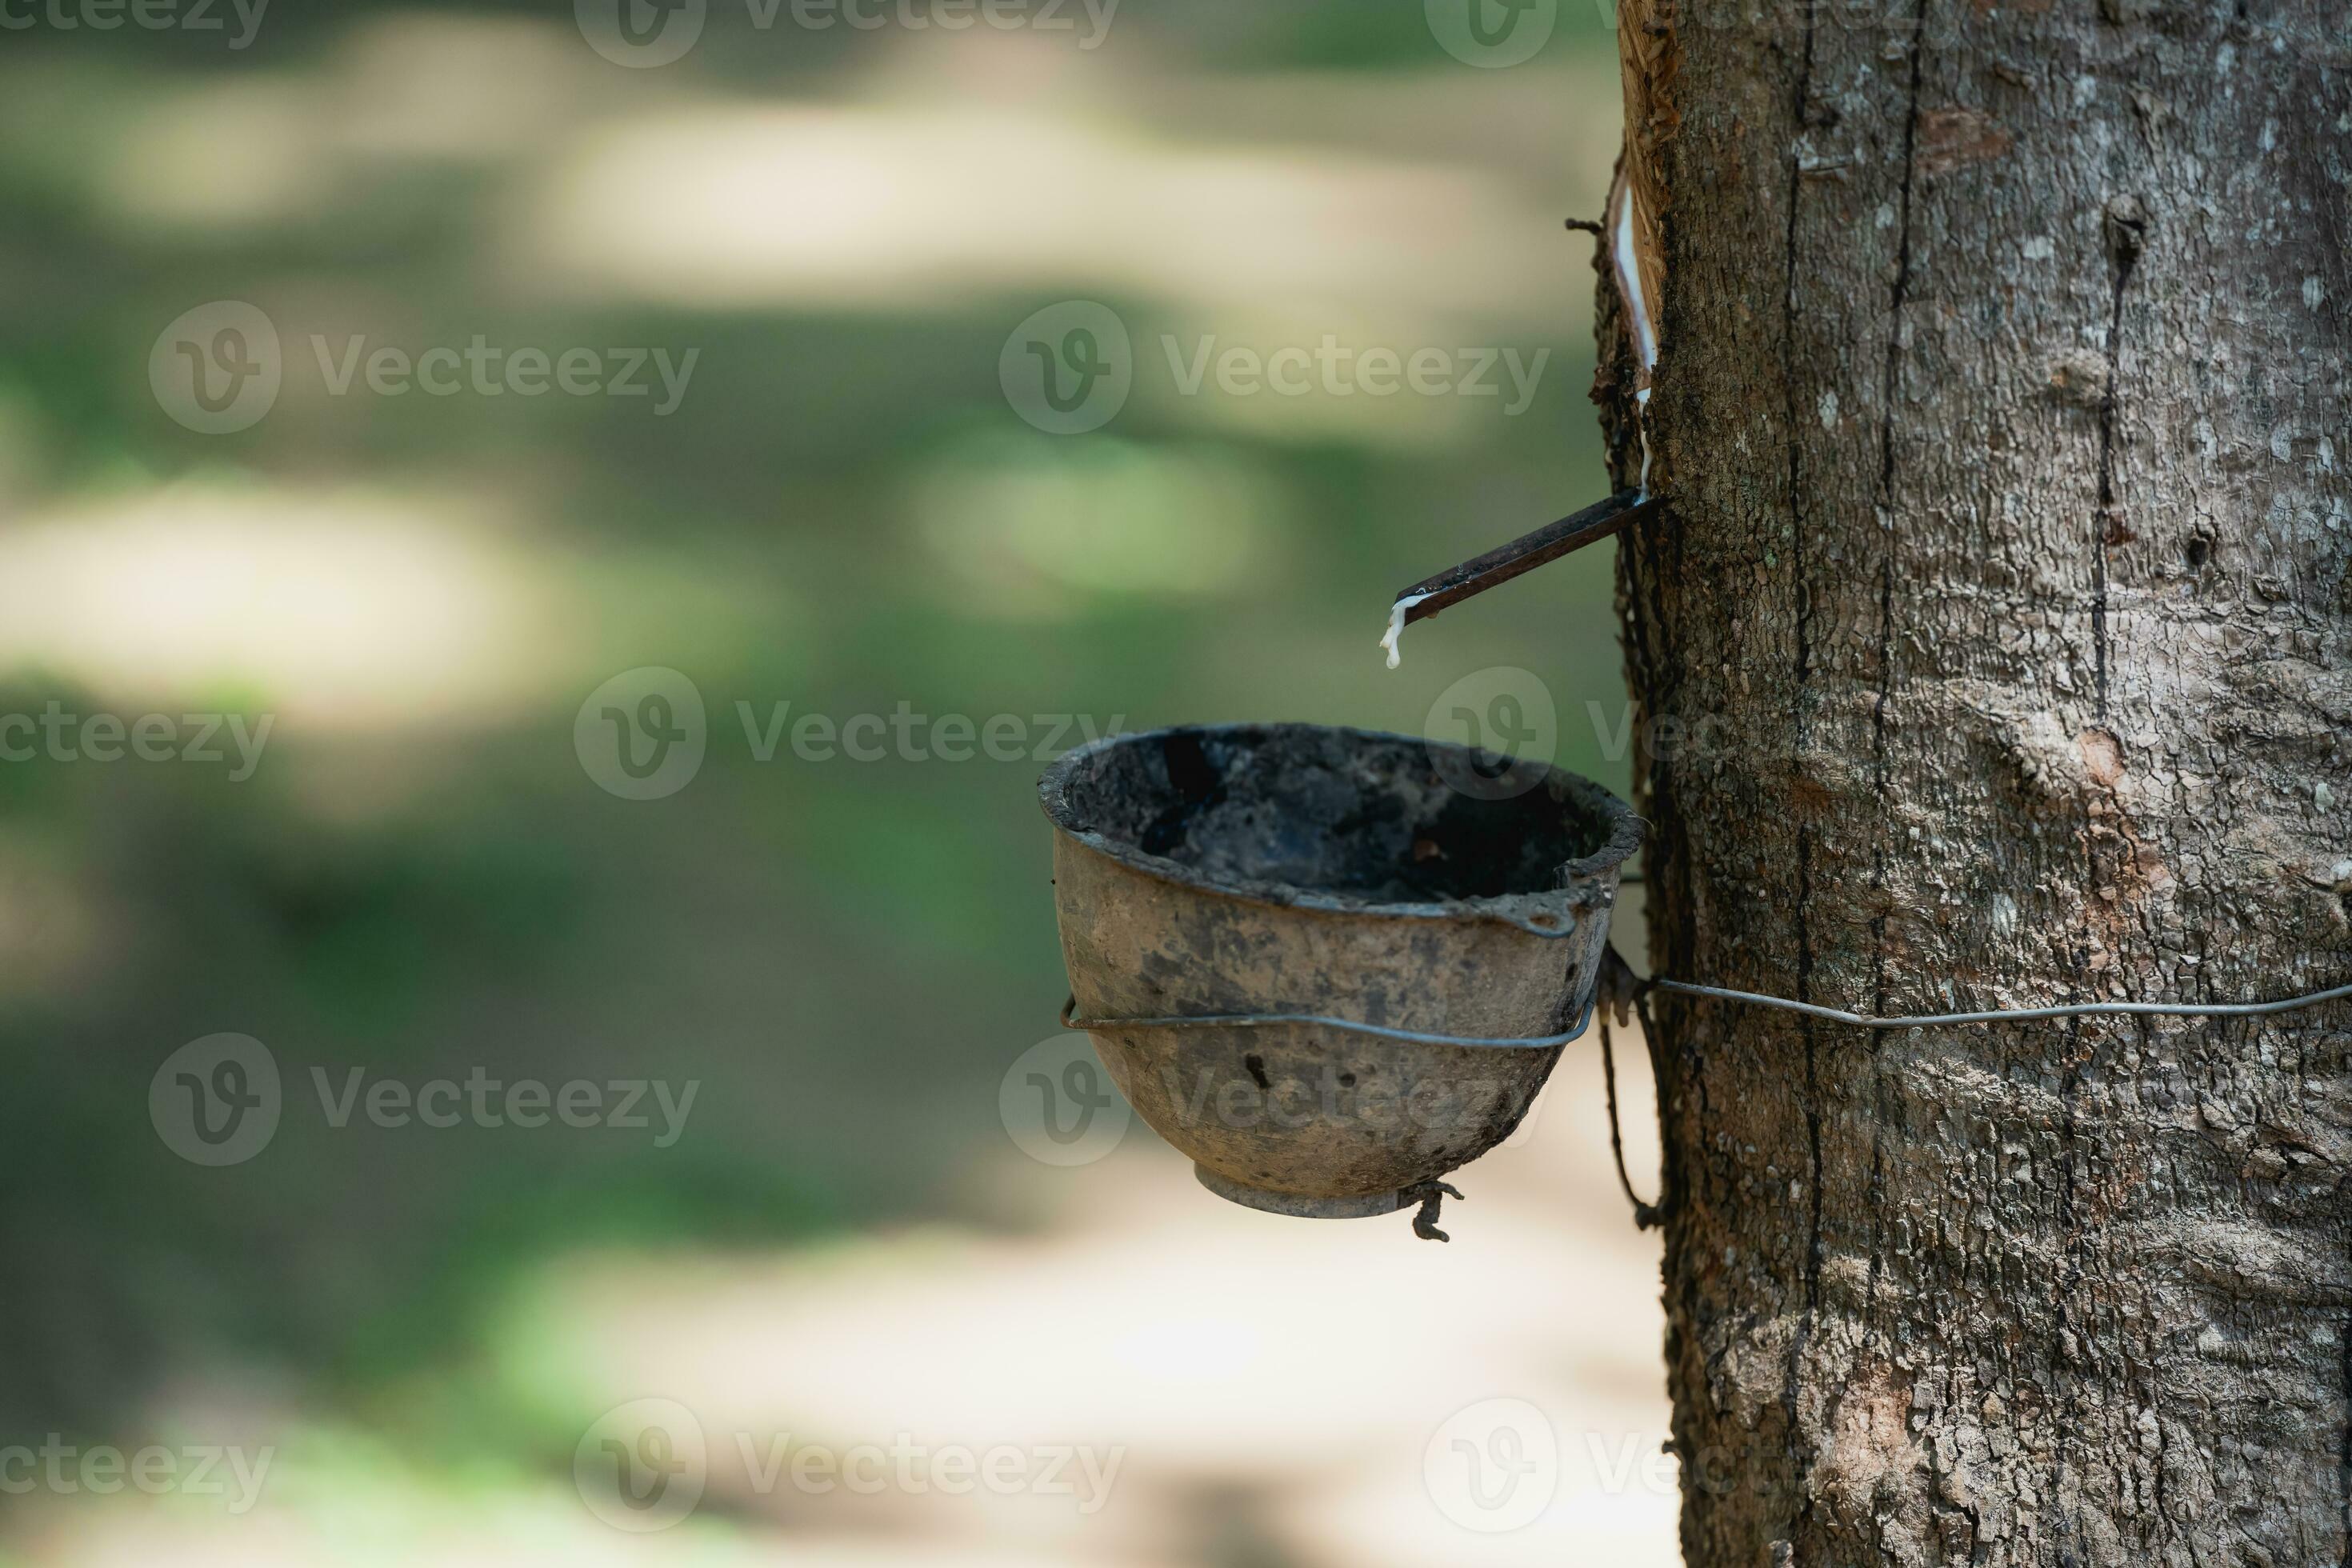 Mens Converteren Bloemlezing tikken latex rubber boom en kom gevulde met latex, dichtbij omhoog van rubber  boom in de boerderij, rubber latex geëxtraheerd van rubber boom. 24965470  stockfoto bij Vecteezy